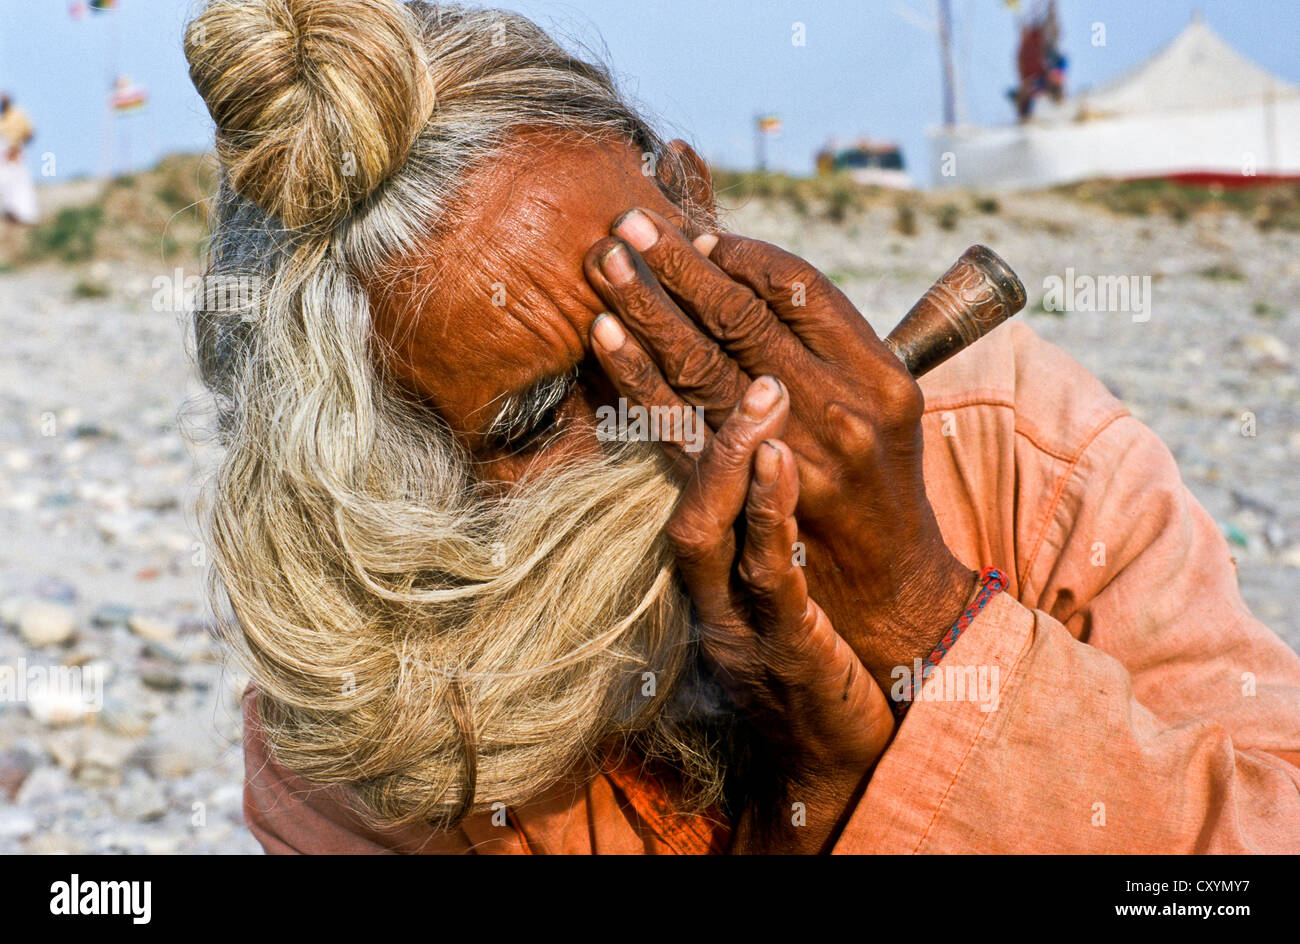 Sadhu, holy man, smoking marihuana during Kumbh Mela or Kumbha Mela, Haridwar, India, Asia Stock Photo